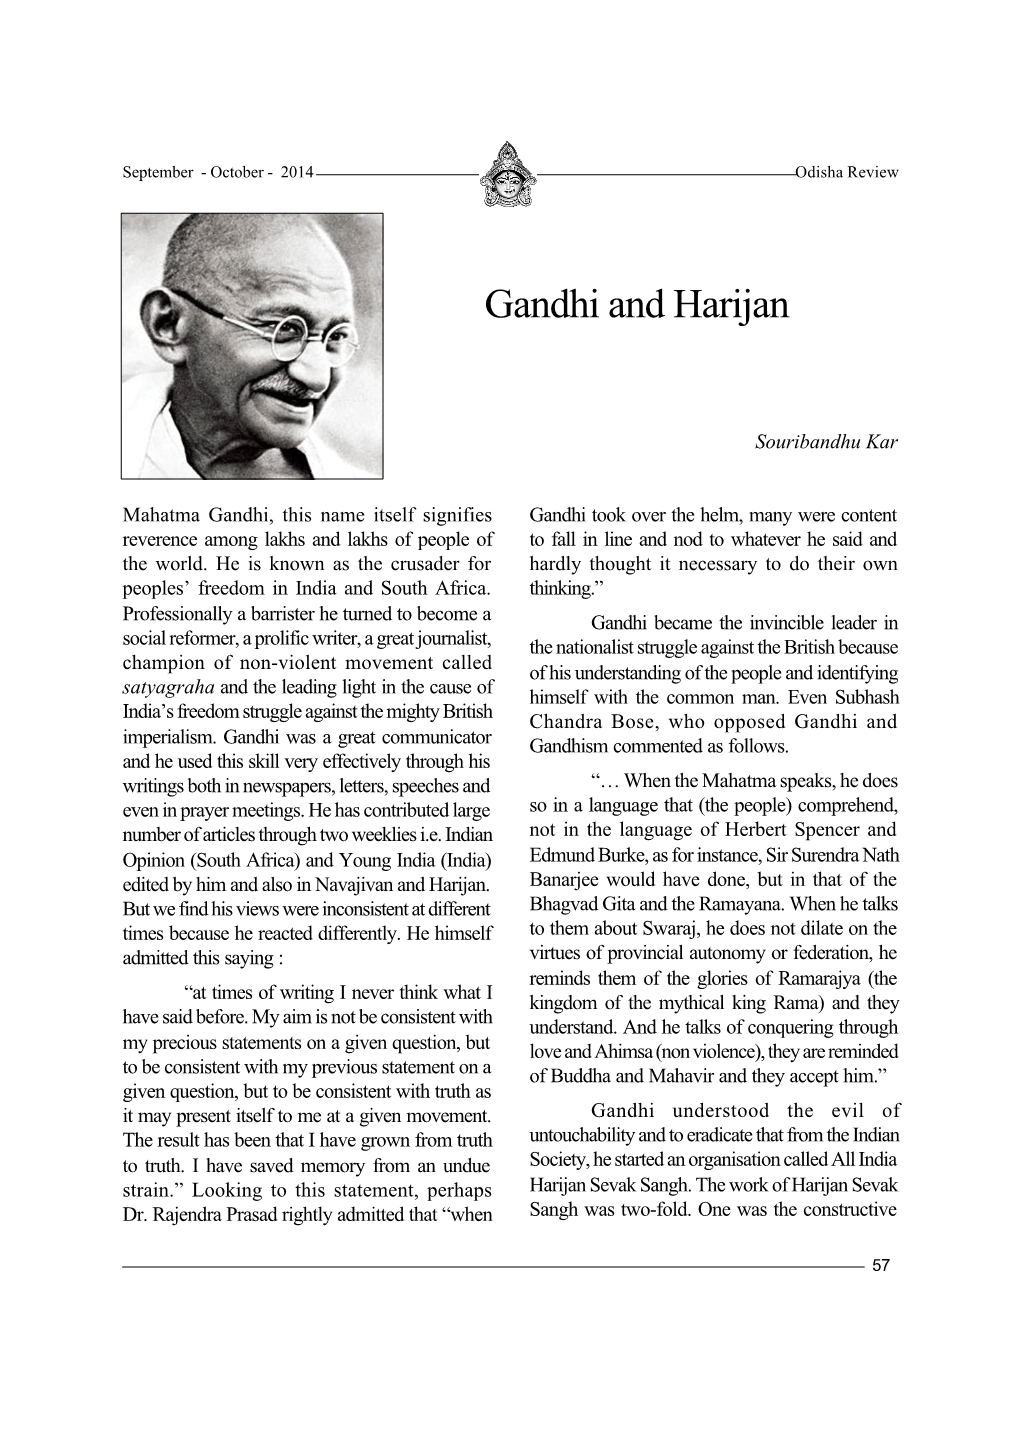 Gandhi and Harijan